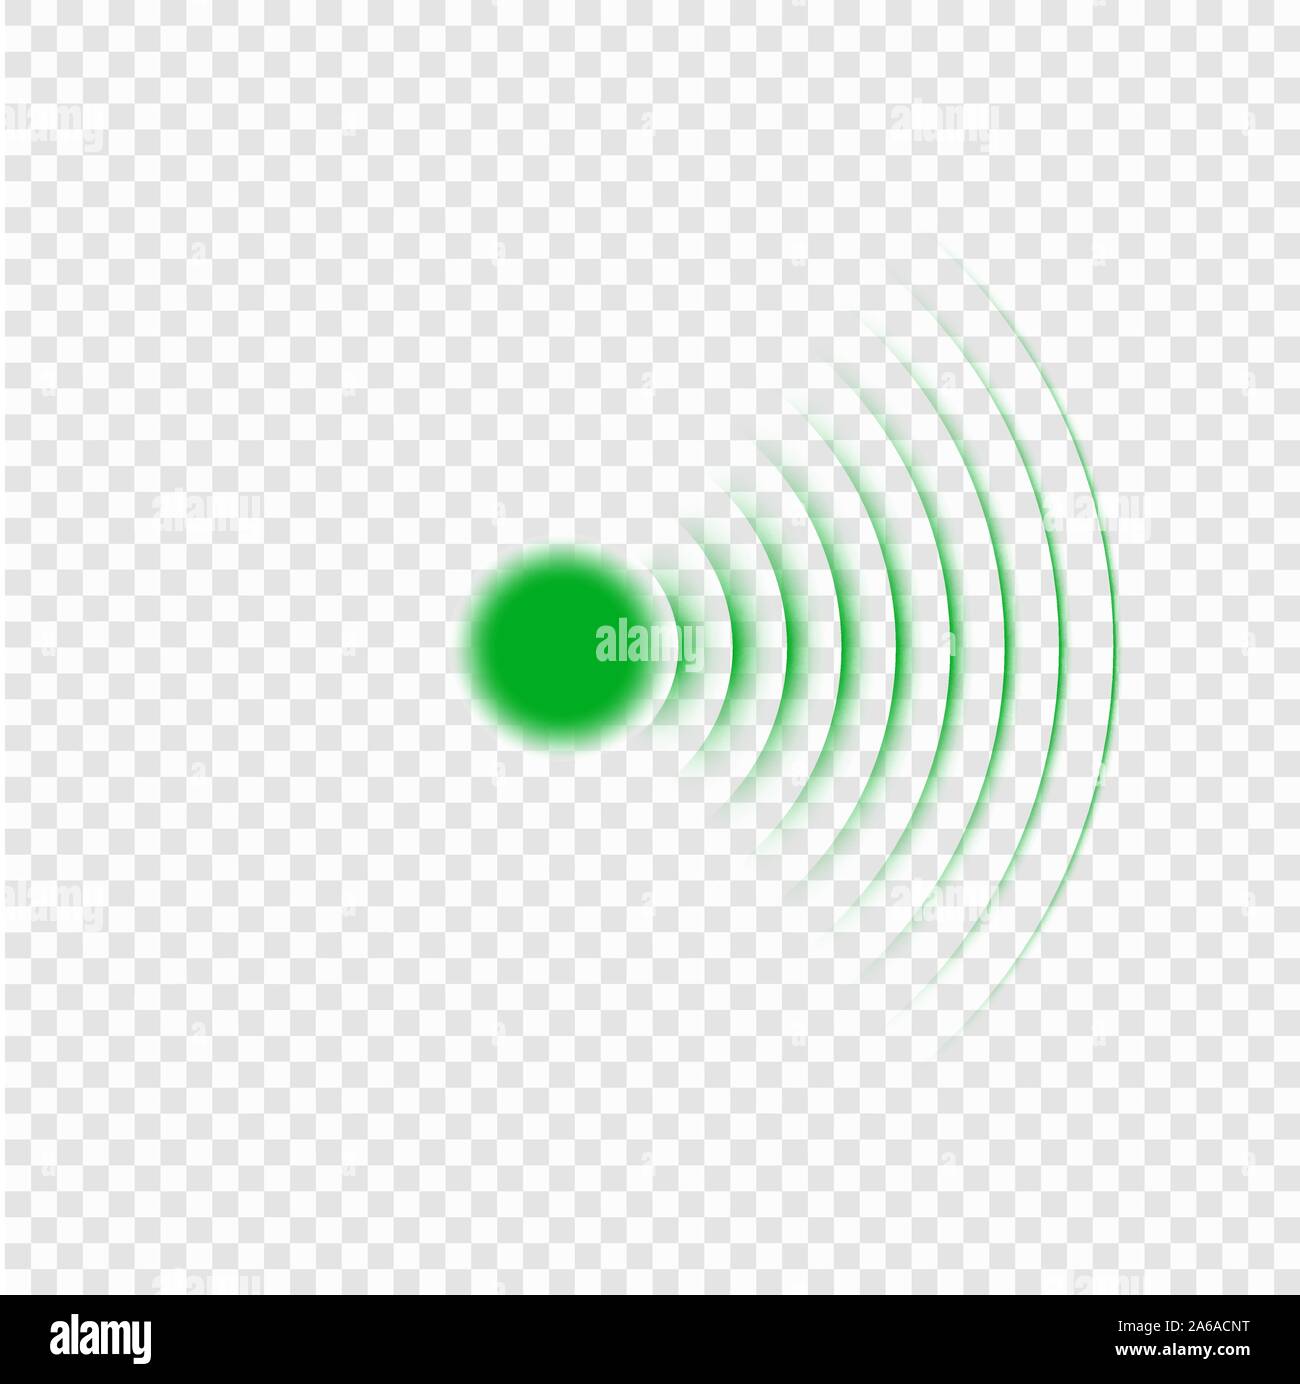 Sonar search sound wave icon. Radar icon Stock Vector